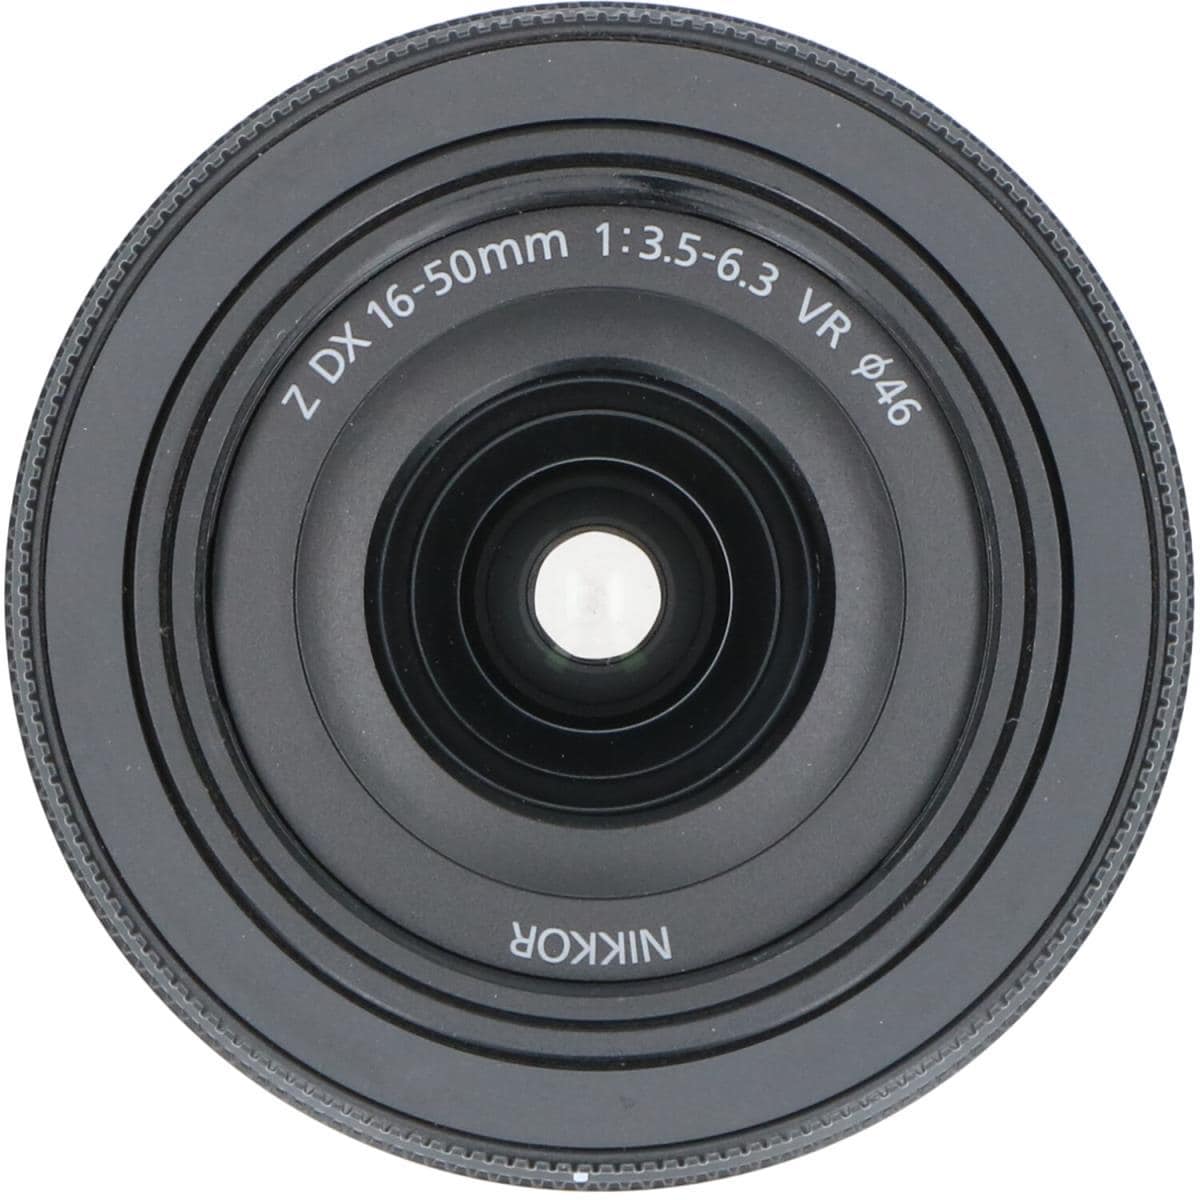 NIKON Z DX16-50mm F3.5-6.3VR BK